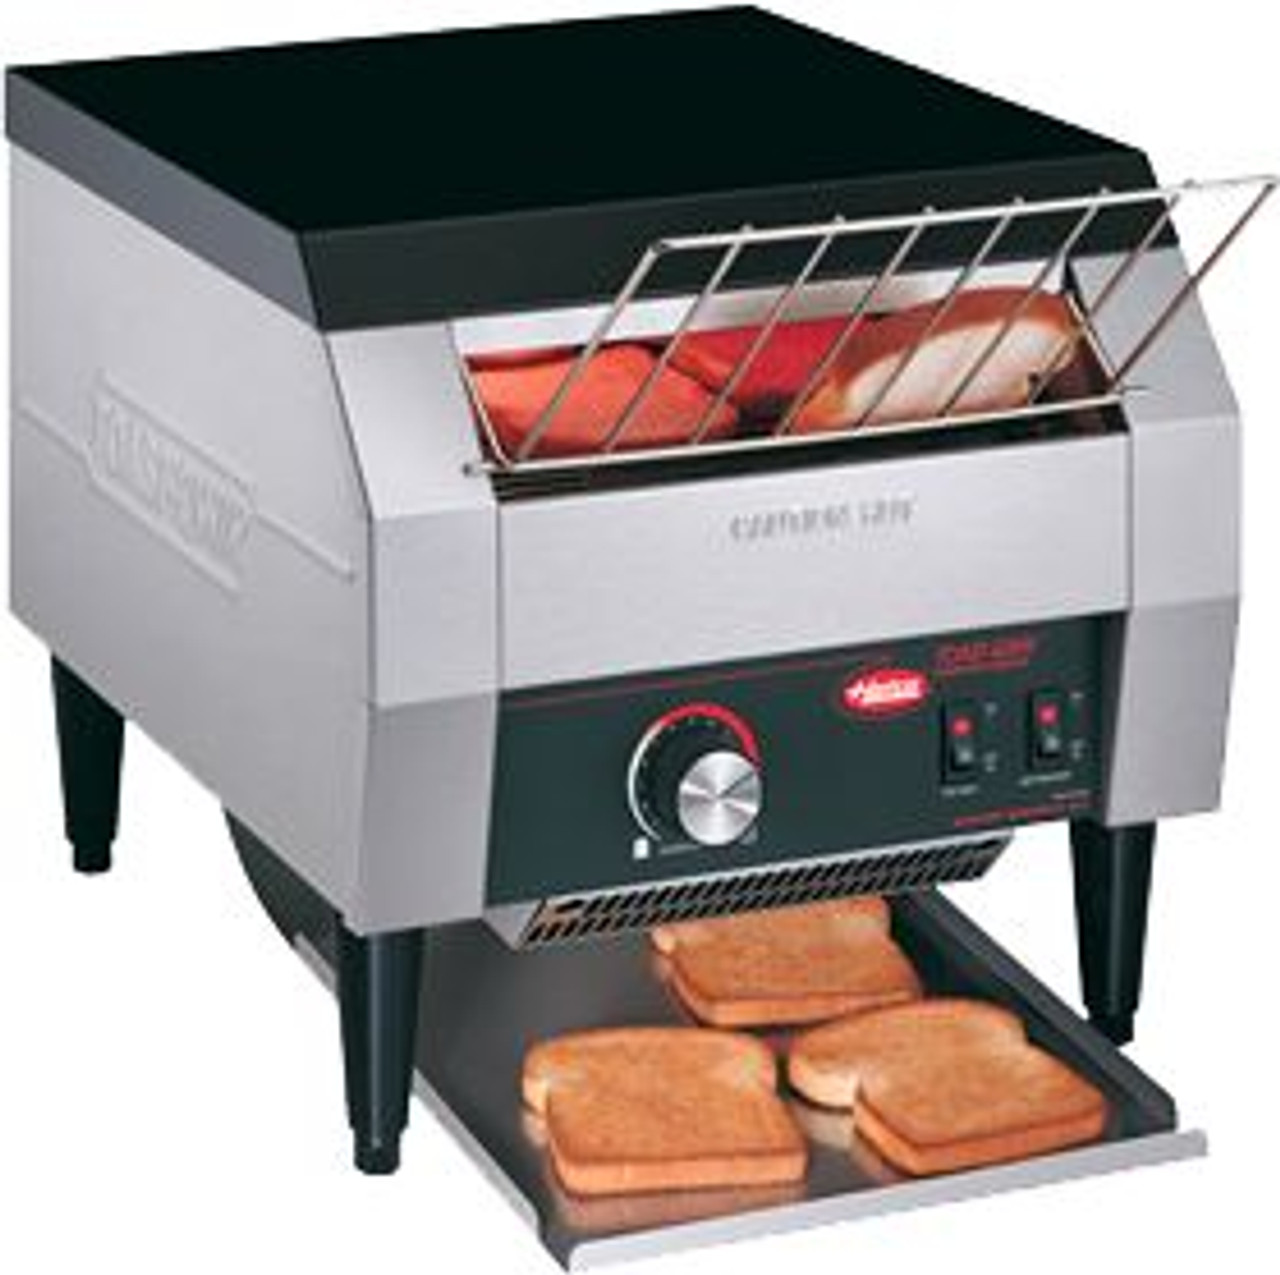 Hatco TQ-10 Toast-Qwik Conveyor Toaster - 5-Slice